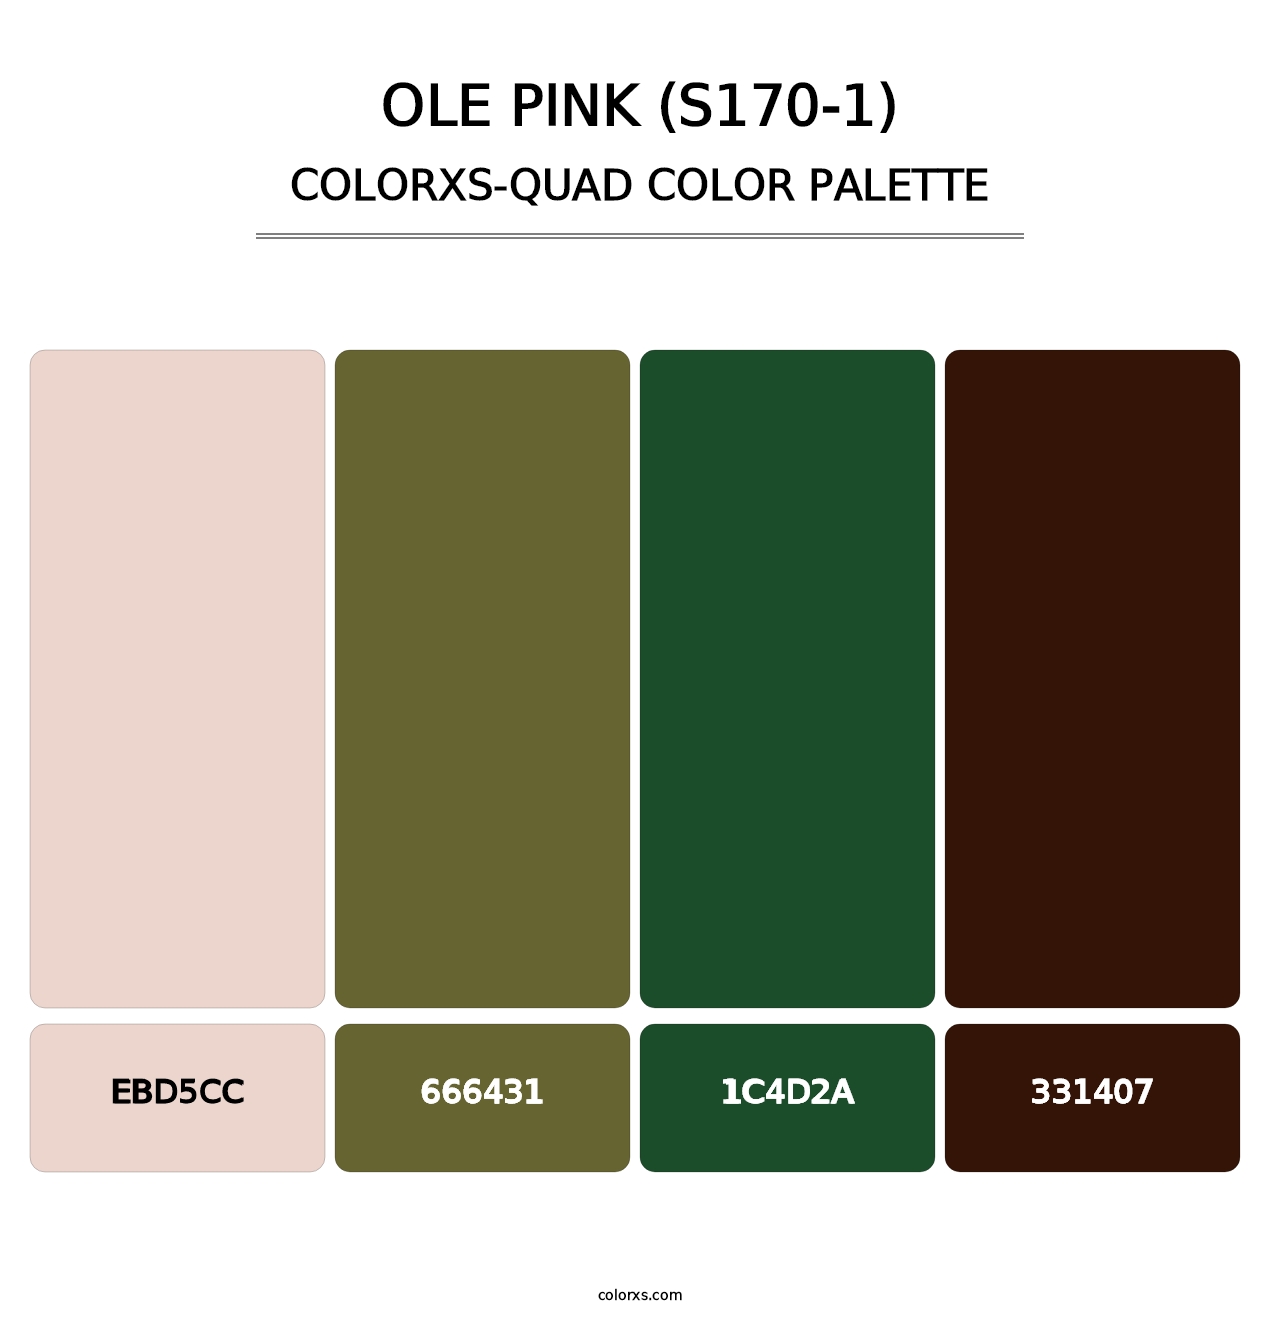 Ole Pink (S170-1) - Colorxs Quad Palette